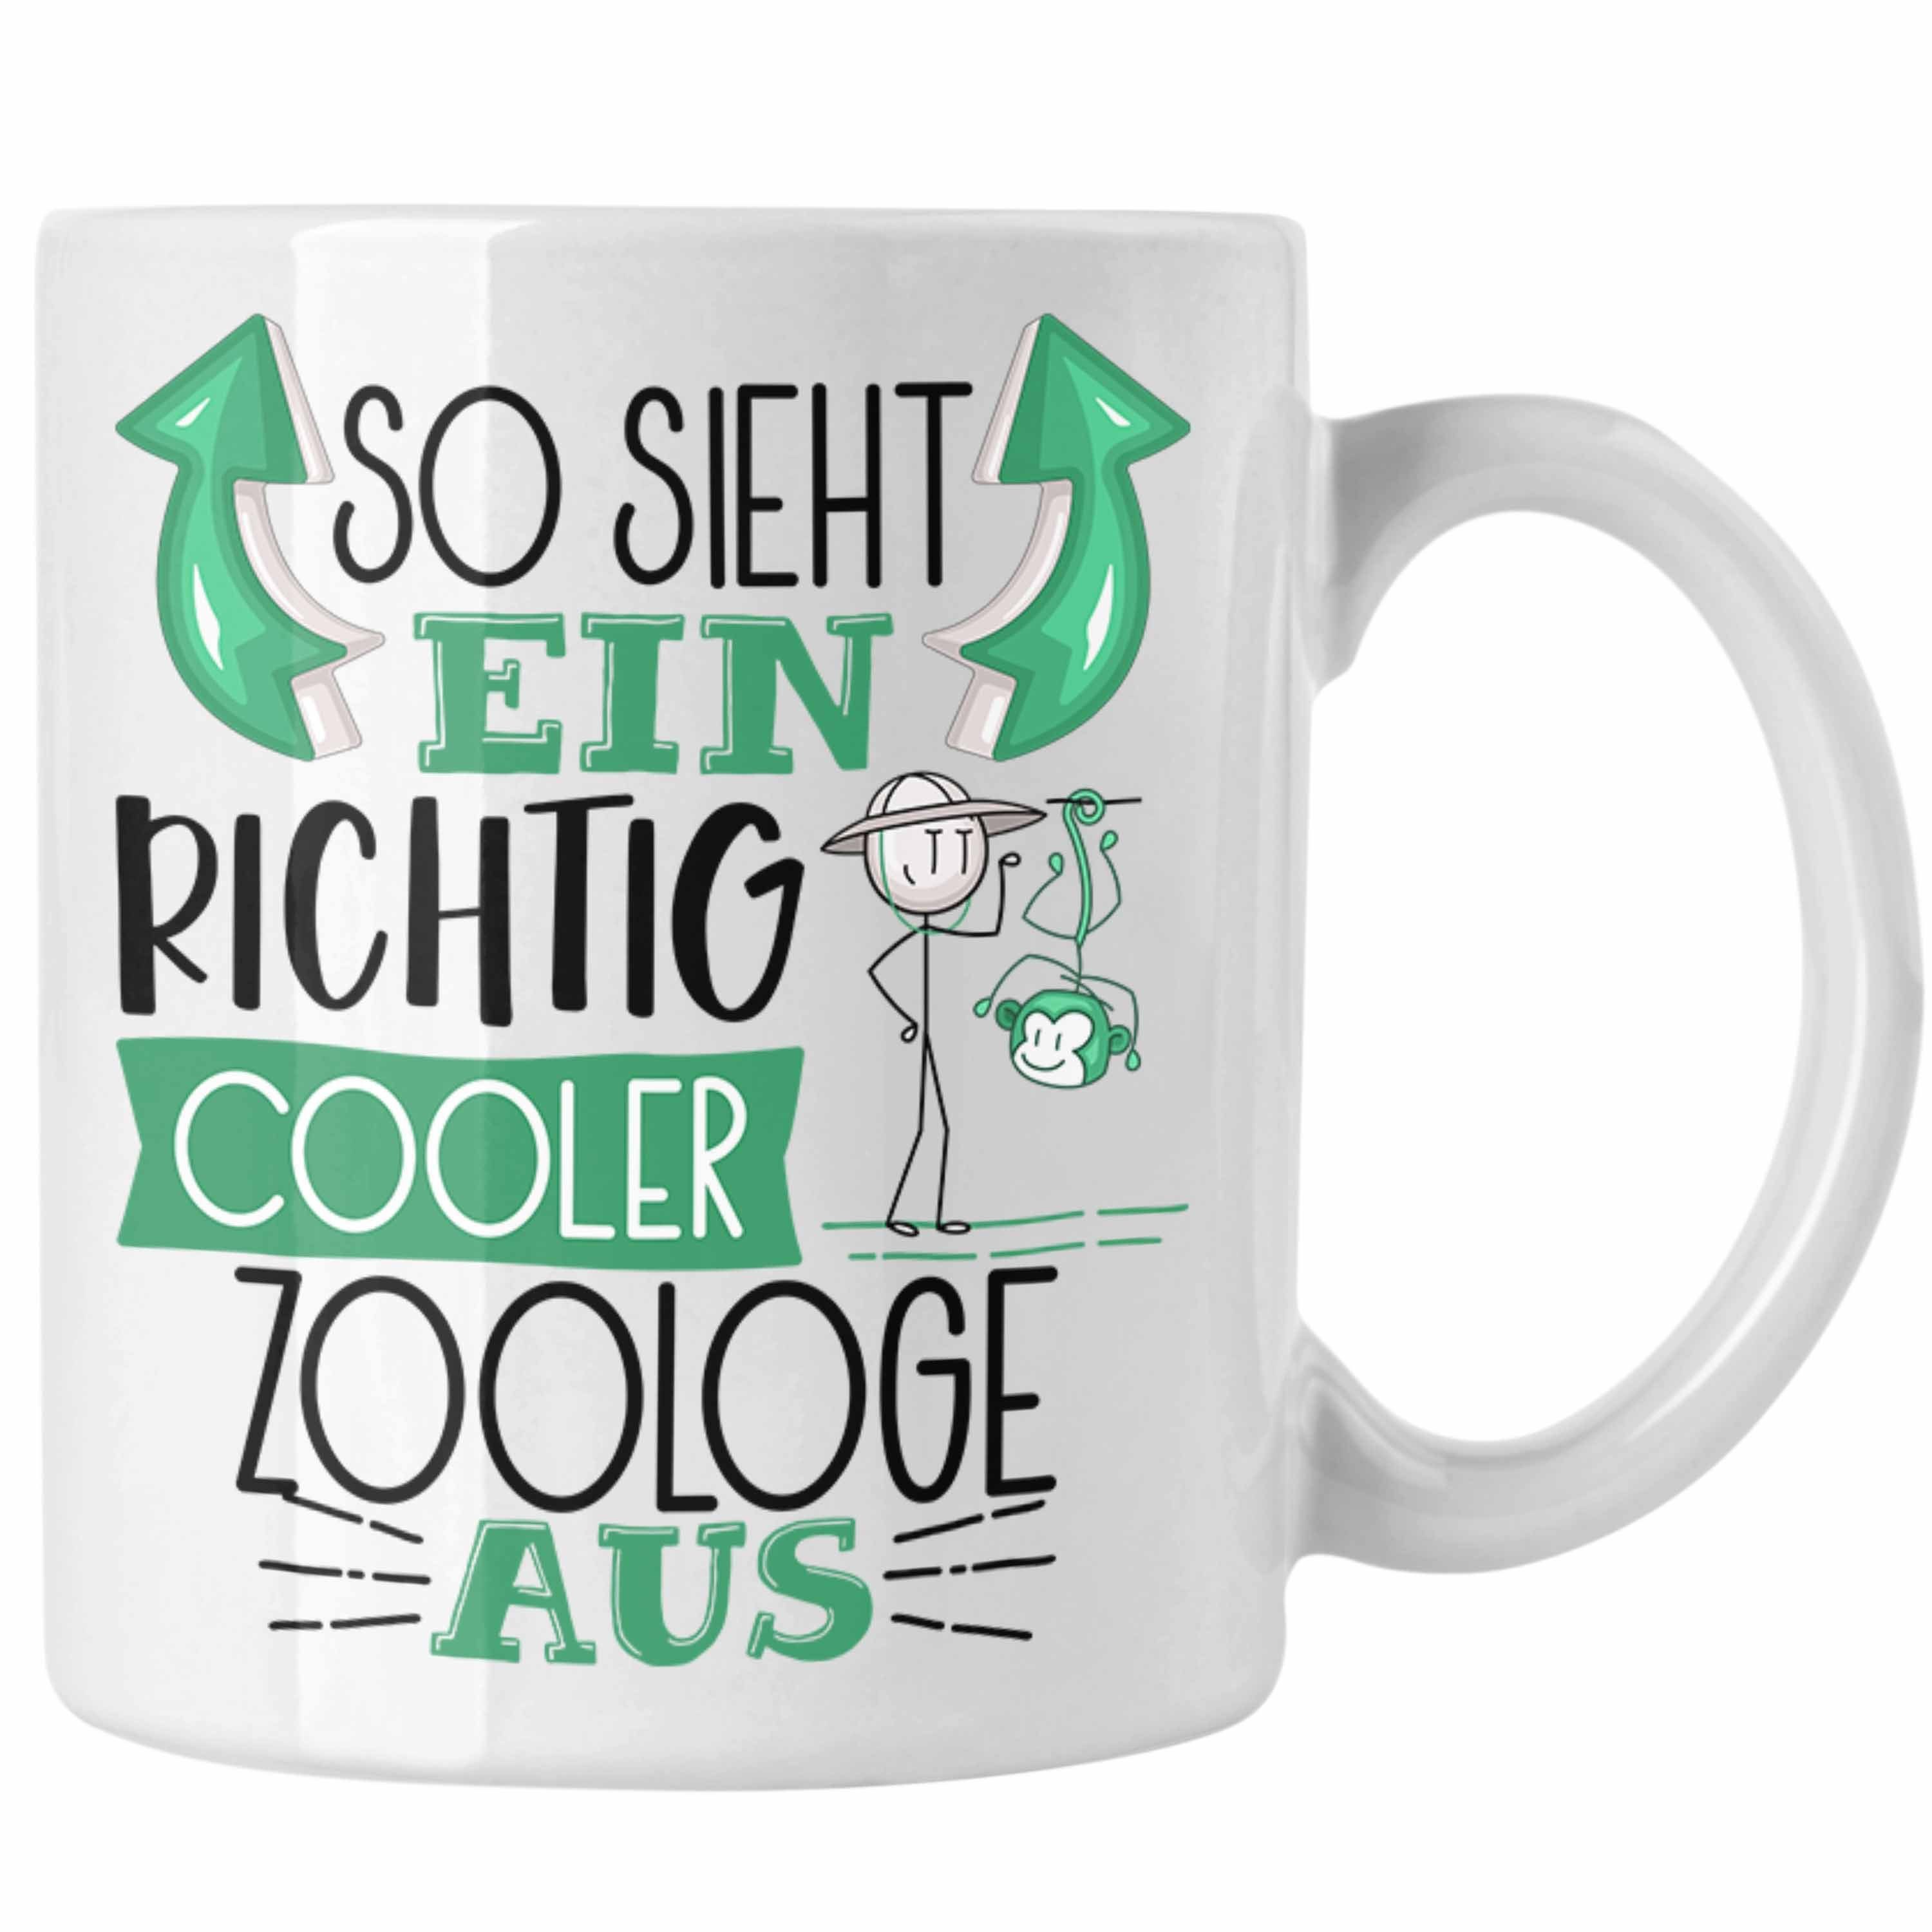 Weiss Ein Aus Tasse Zoologe So Geschenk Cooler Tasse Trendation Zoologe Gesche Sieht RIchtig